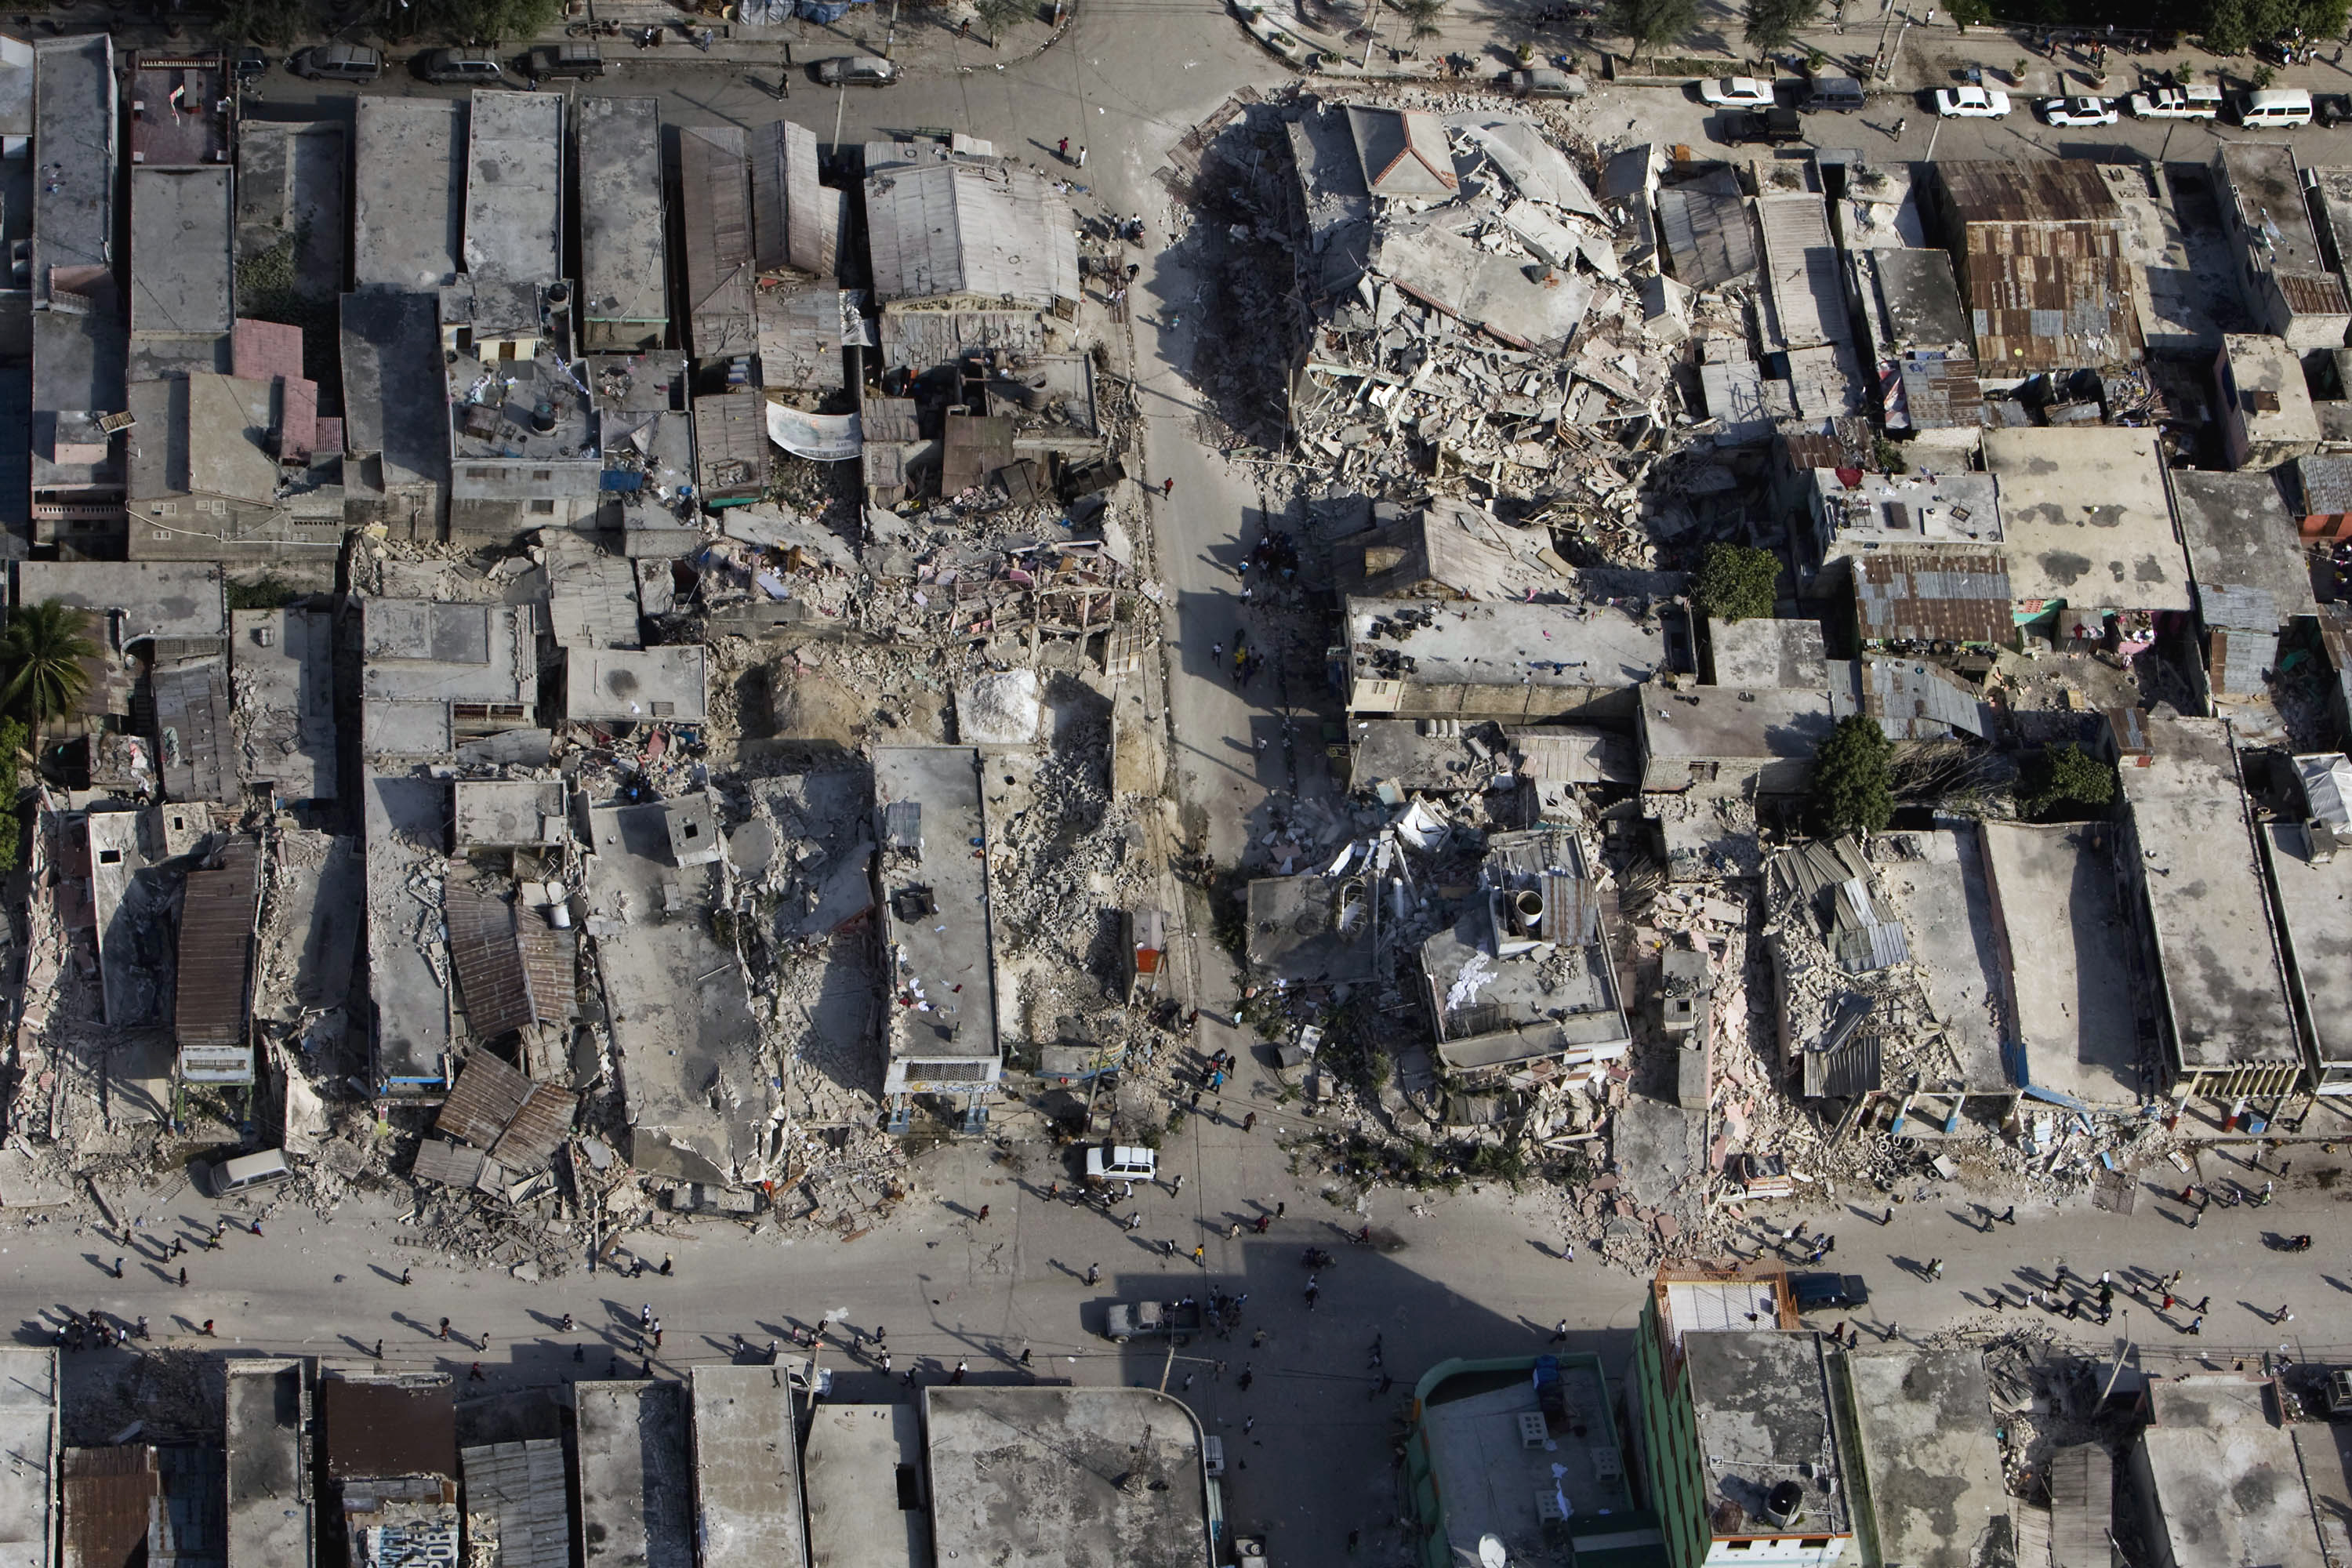 2010 Haiti earthquake damage4